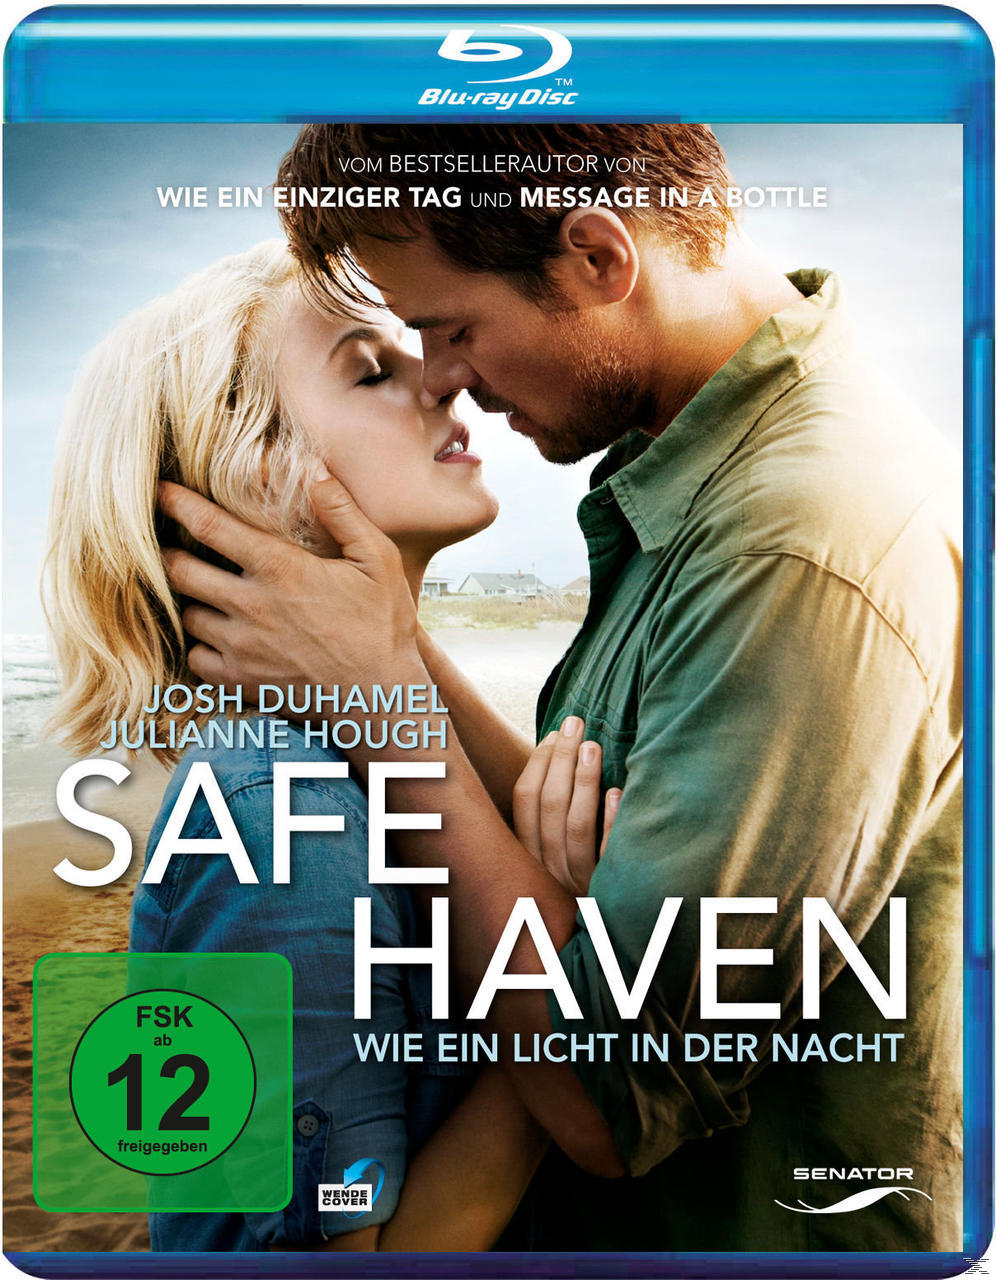 Blu-ray Haven Safe ein Licht Wie in - Nacht der